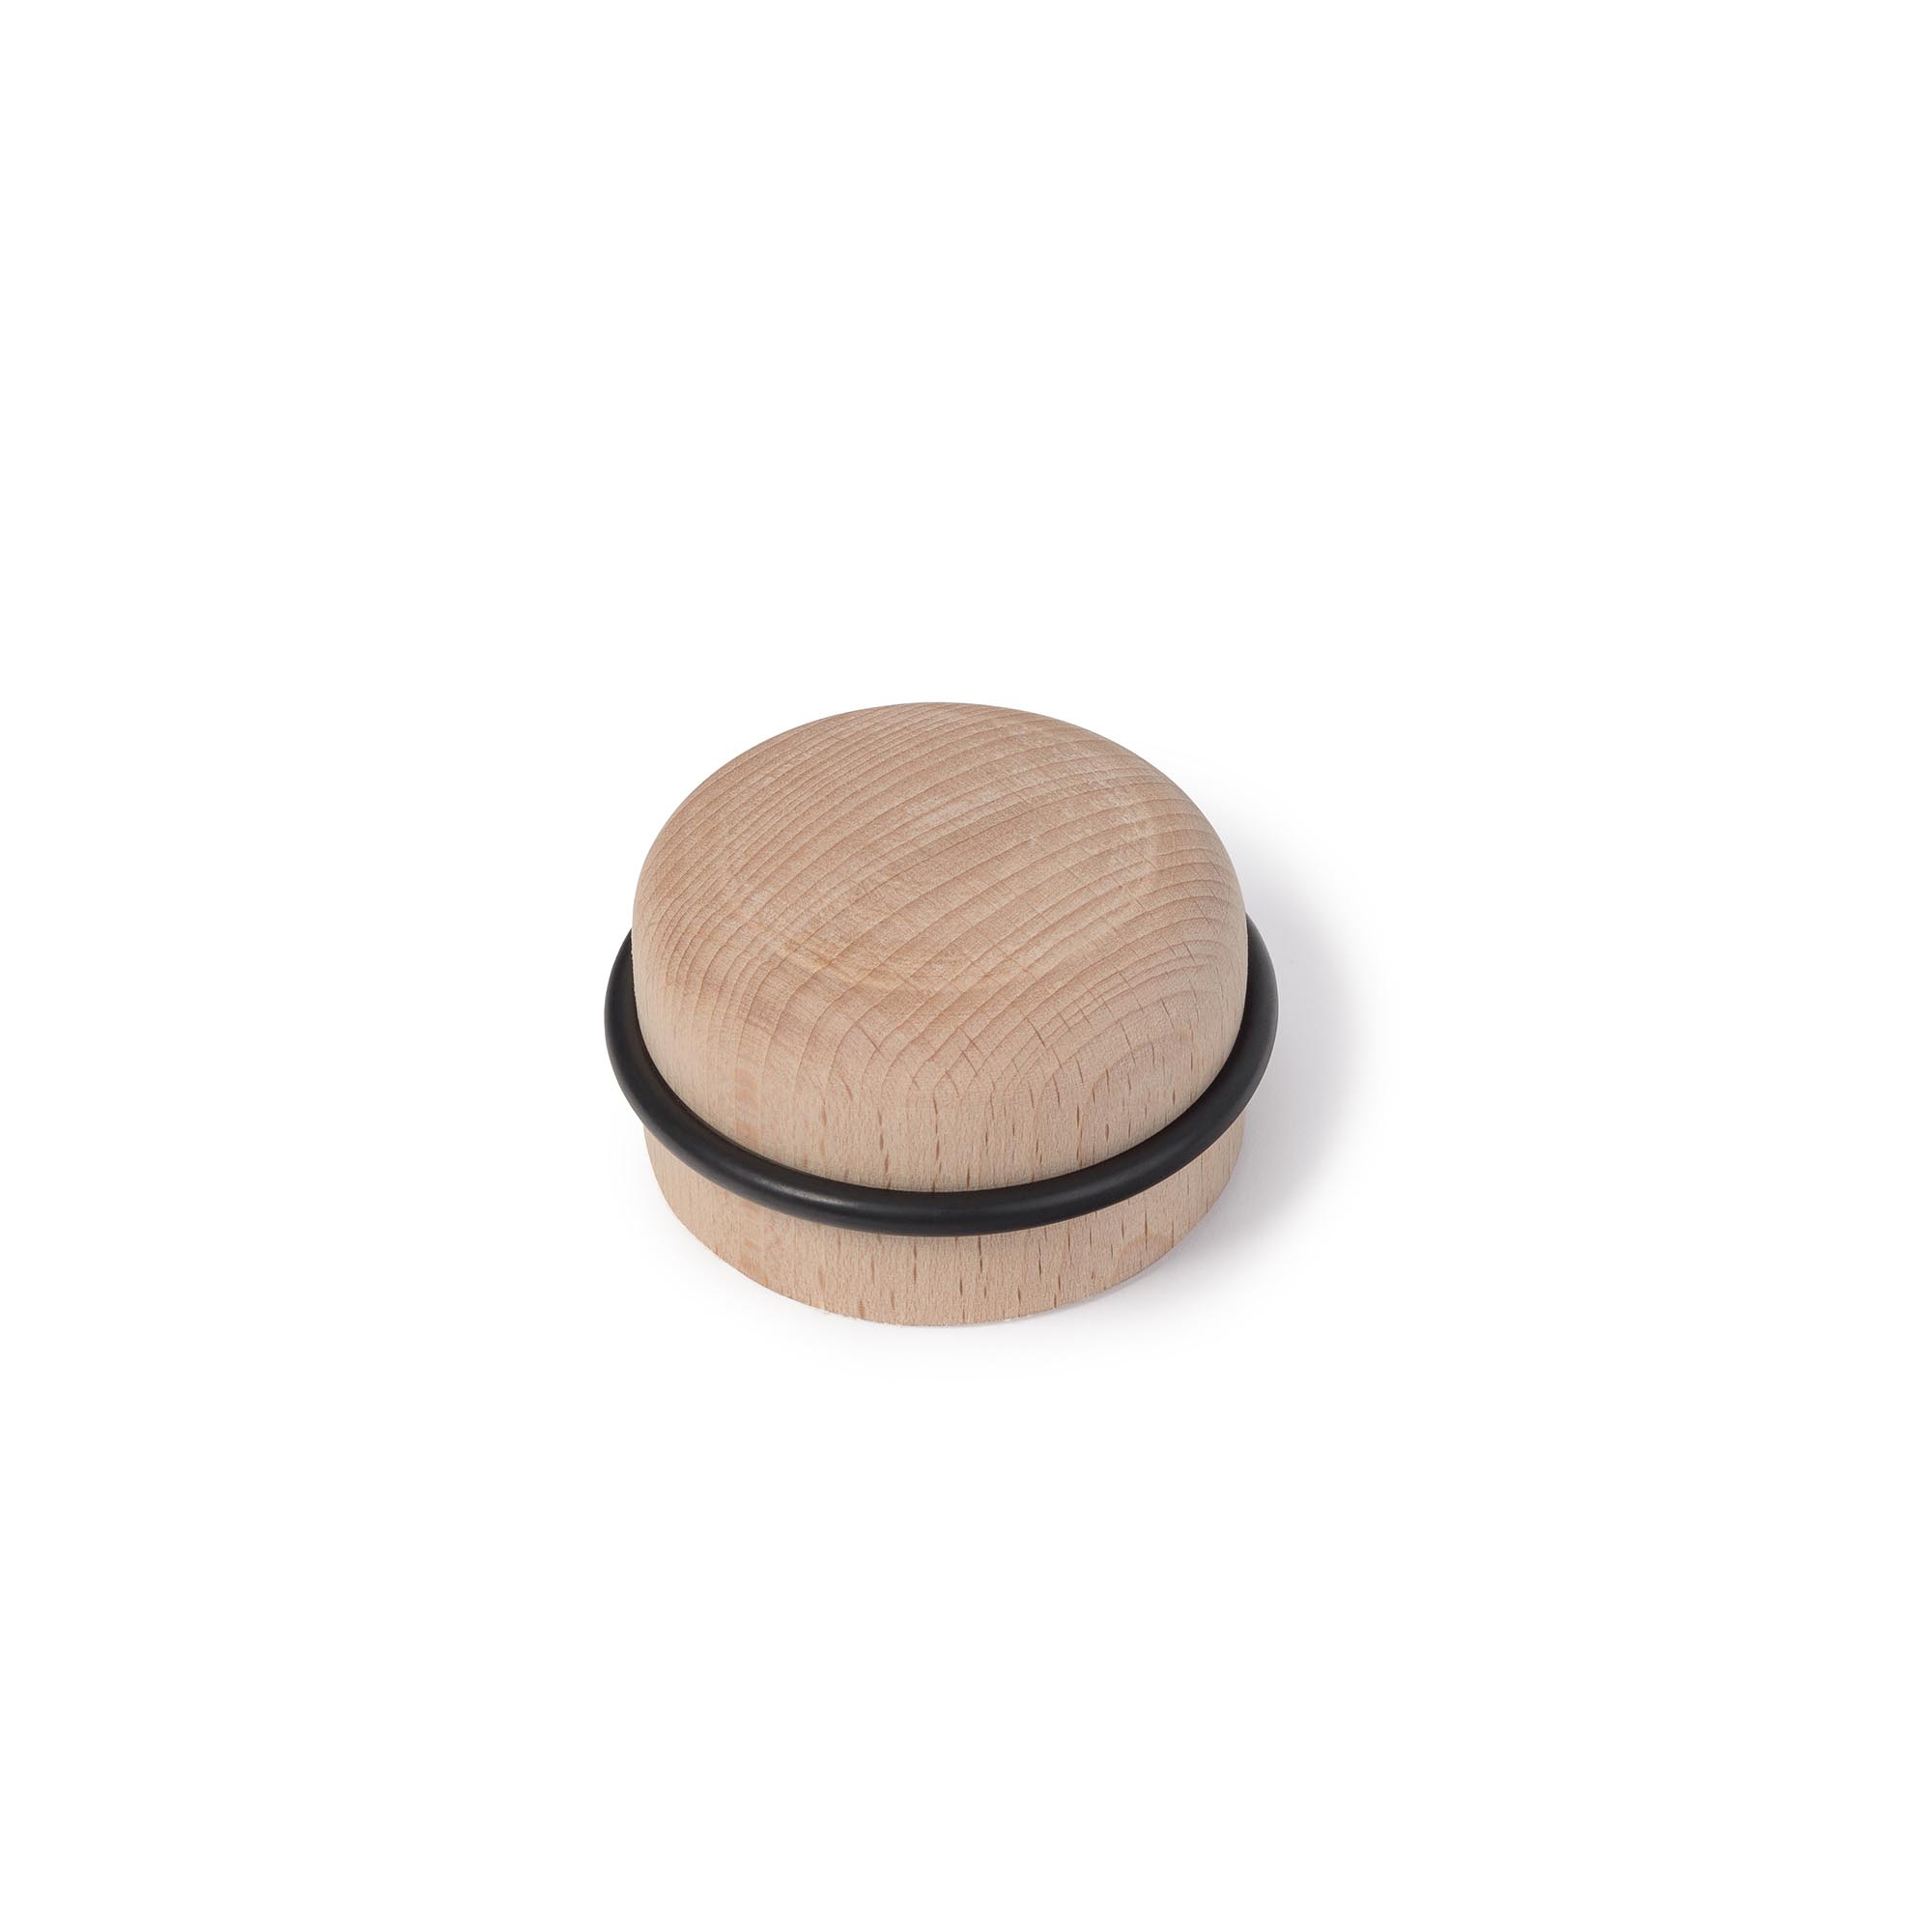 Tope de Puerta en madera de Haya Acabado en Crudo-Negro | Medidas 63*63*35 mm | Sistema de Fijación Adhesivo | 1 Unidad